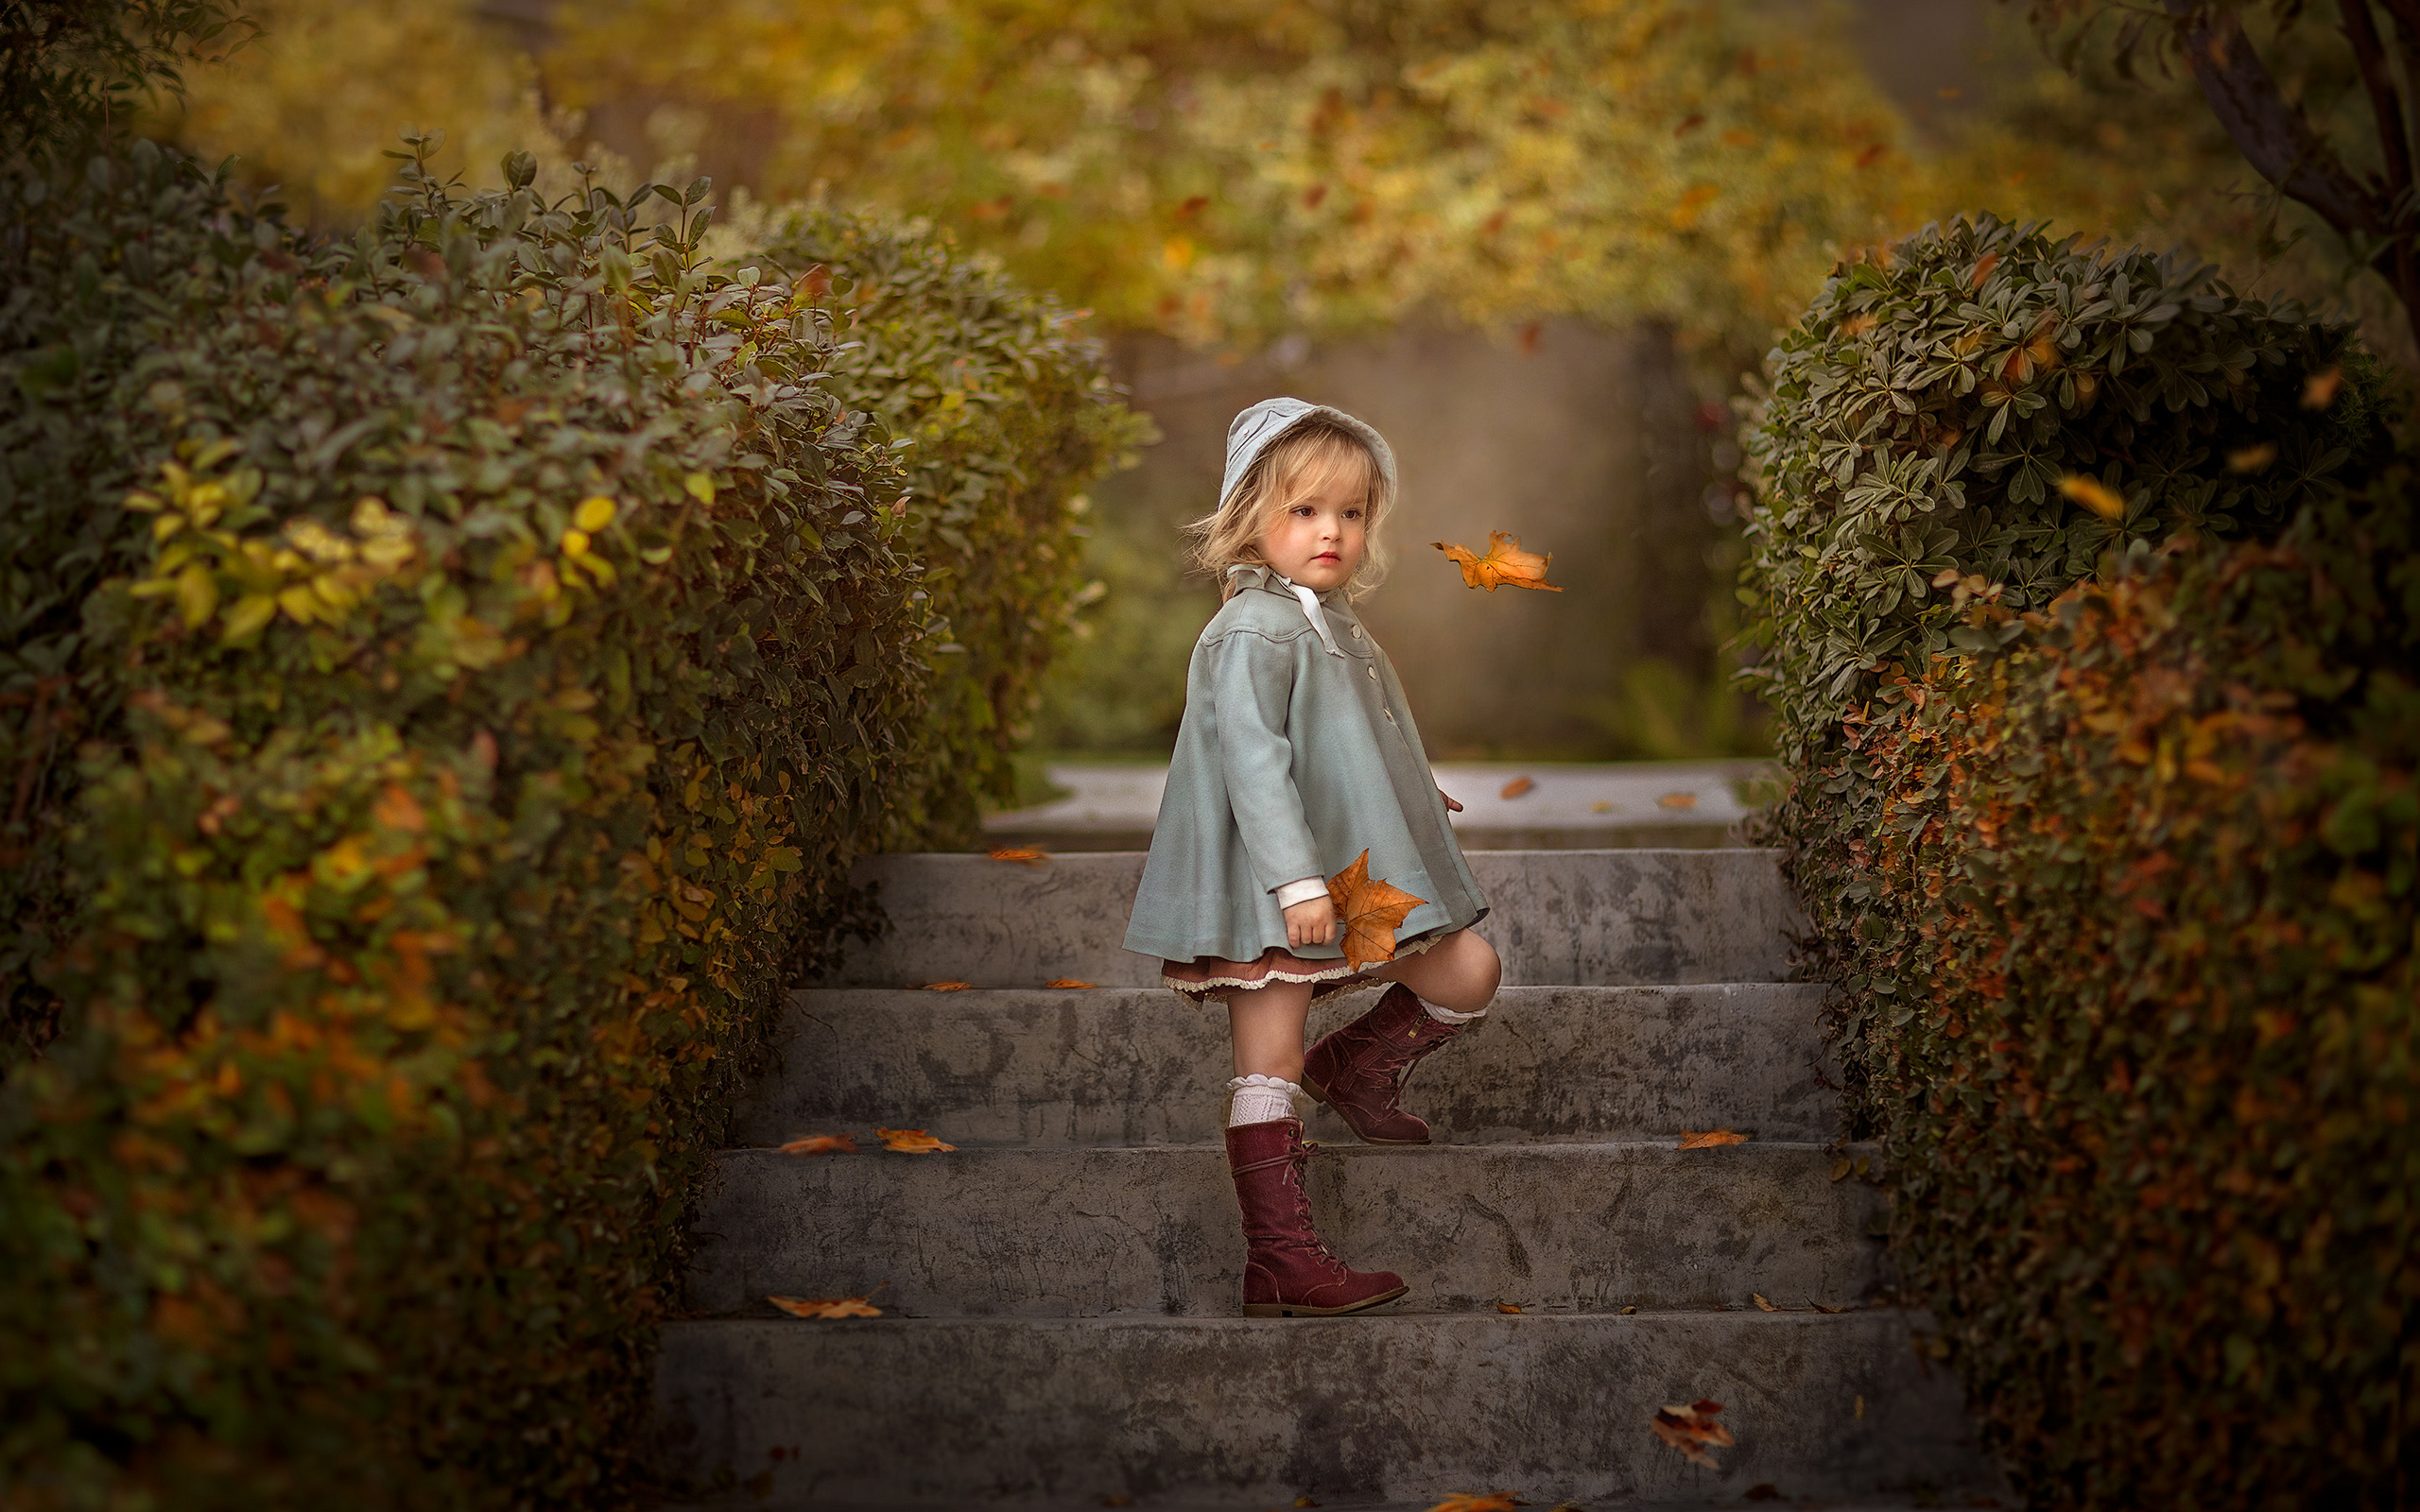 Картинка девочка Листья Размытый фон Дети осенние лестницы Девочки лист Листва боке ребёнок Осень Лестница